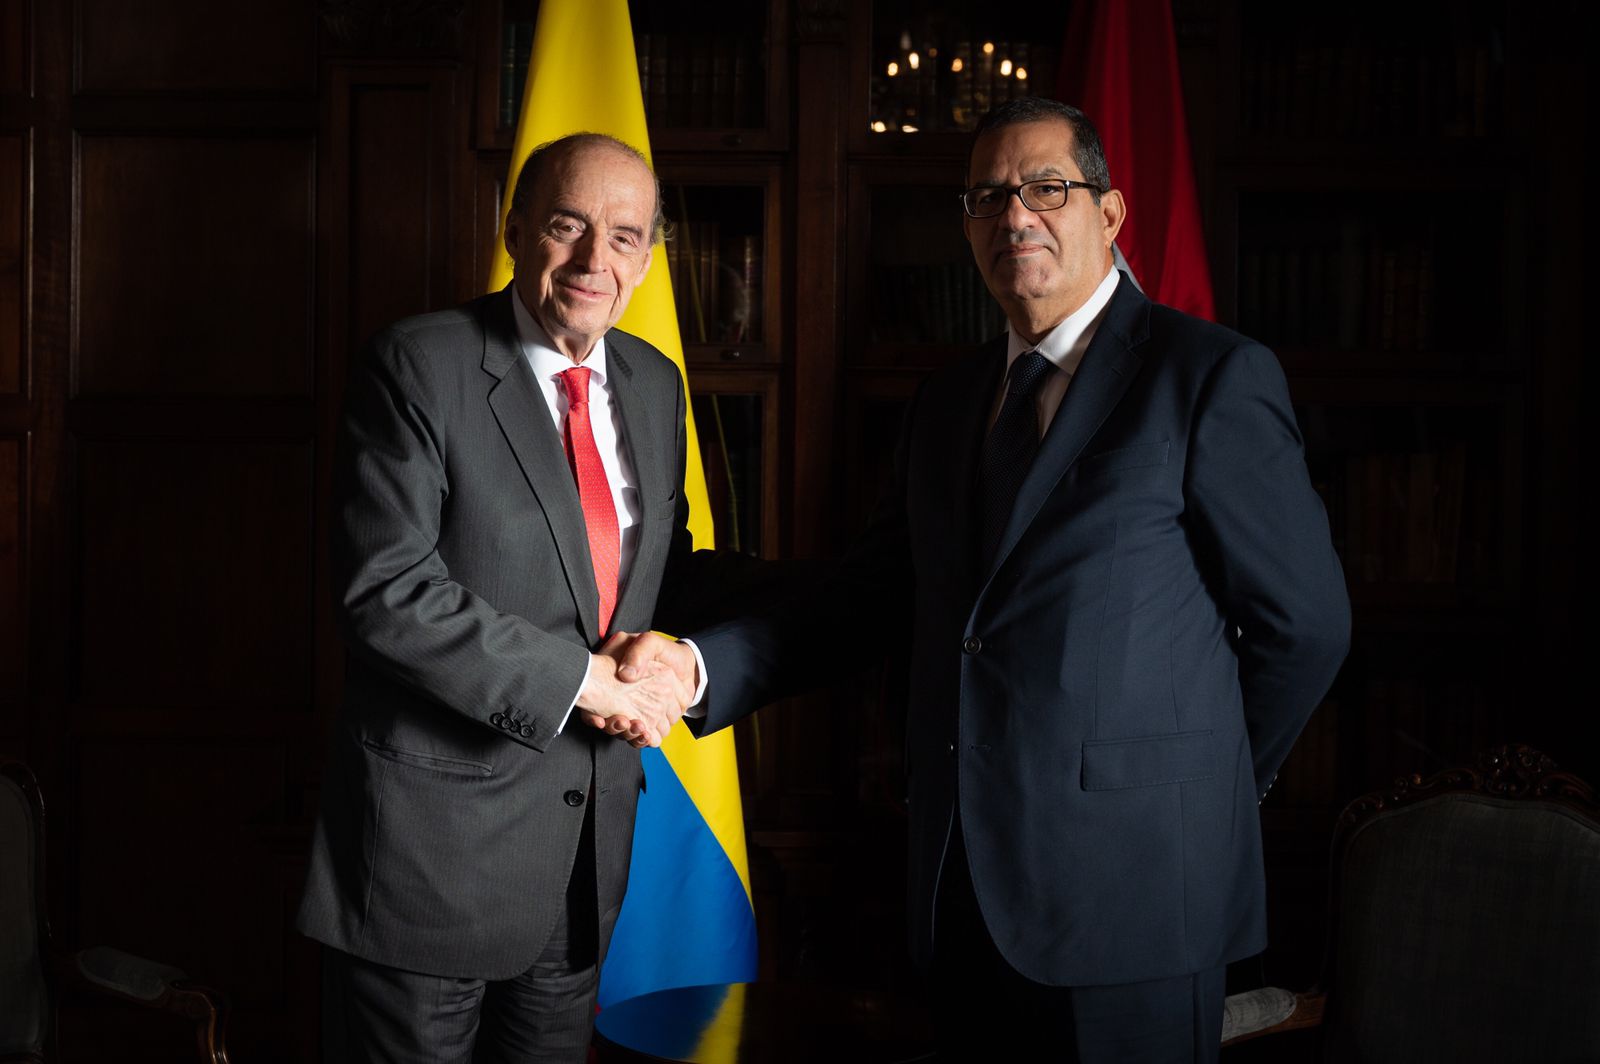 El Ministro de Relaciones Exteriores recibió Copias de Estilo del nuevo Embajador de la República Árabe de Egipto en Colombia